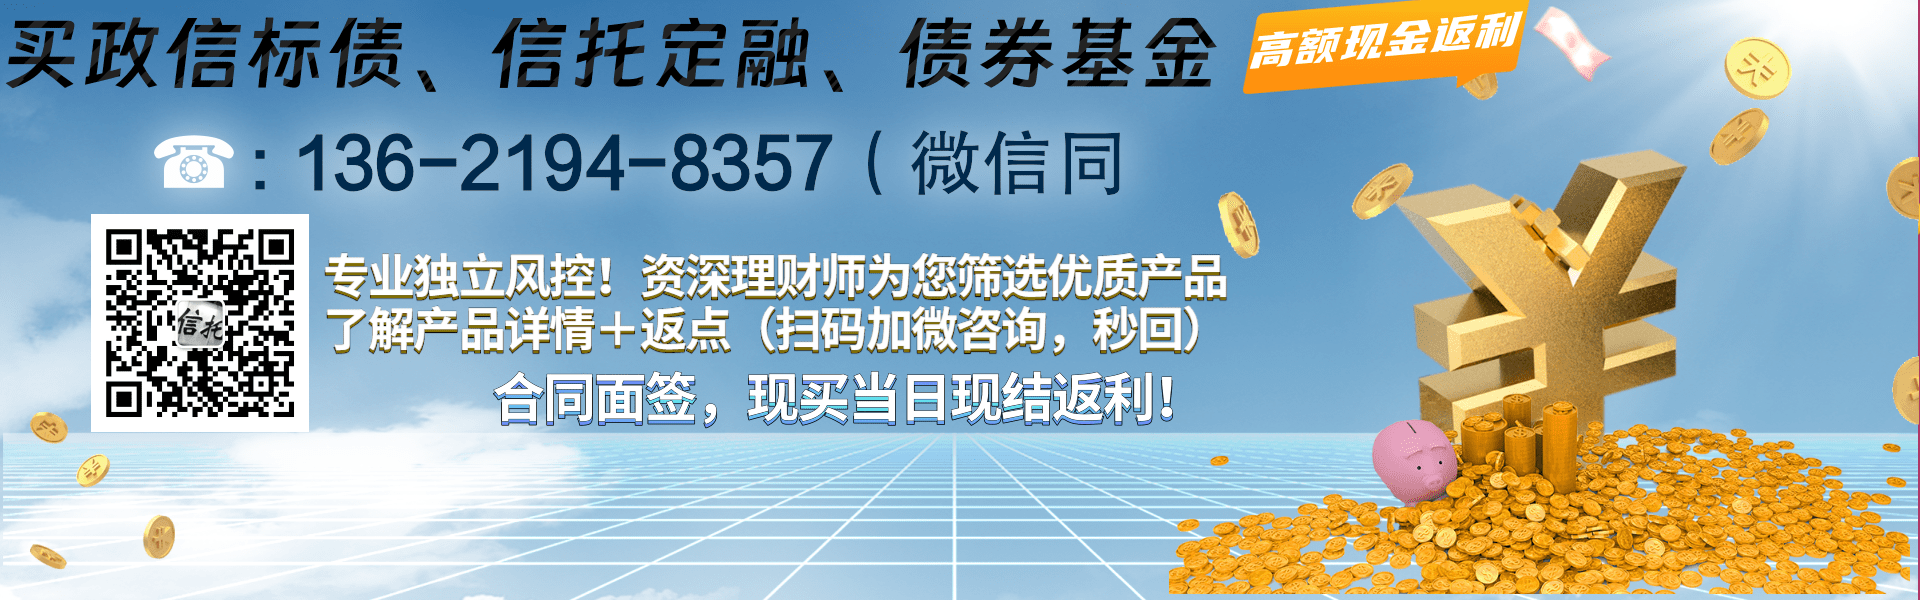 央企信托-117号四川成都青白江标准债集合信托计划